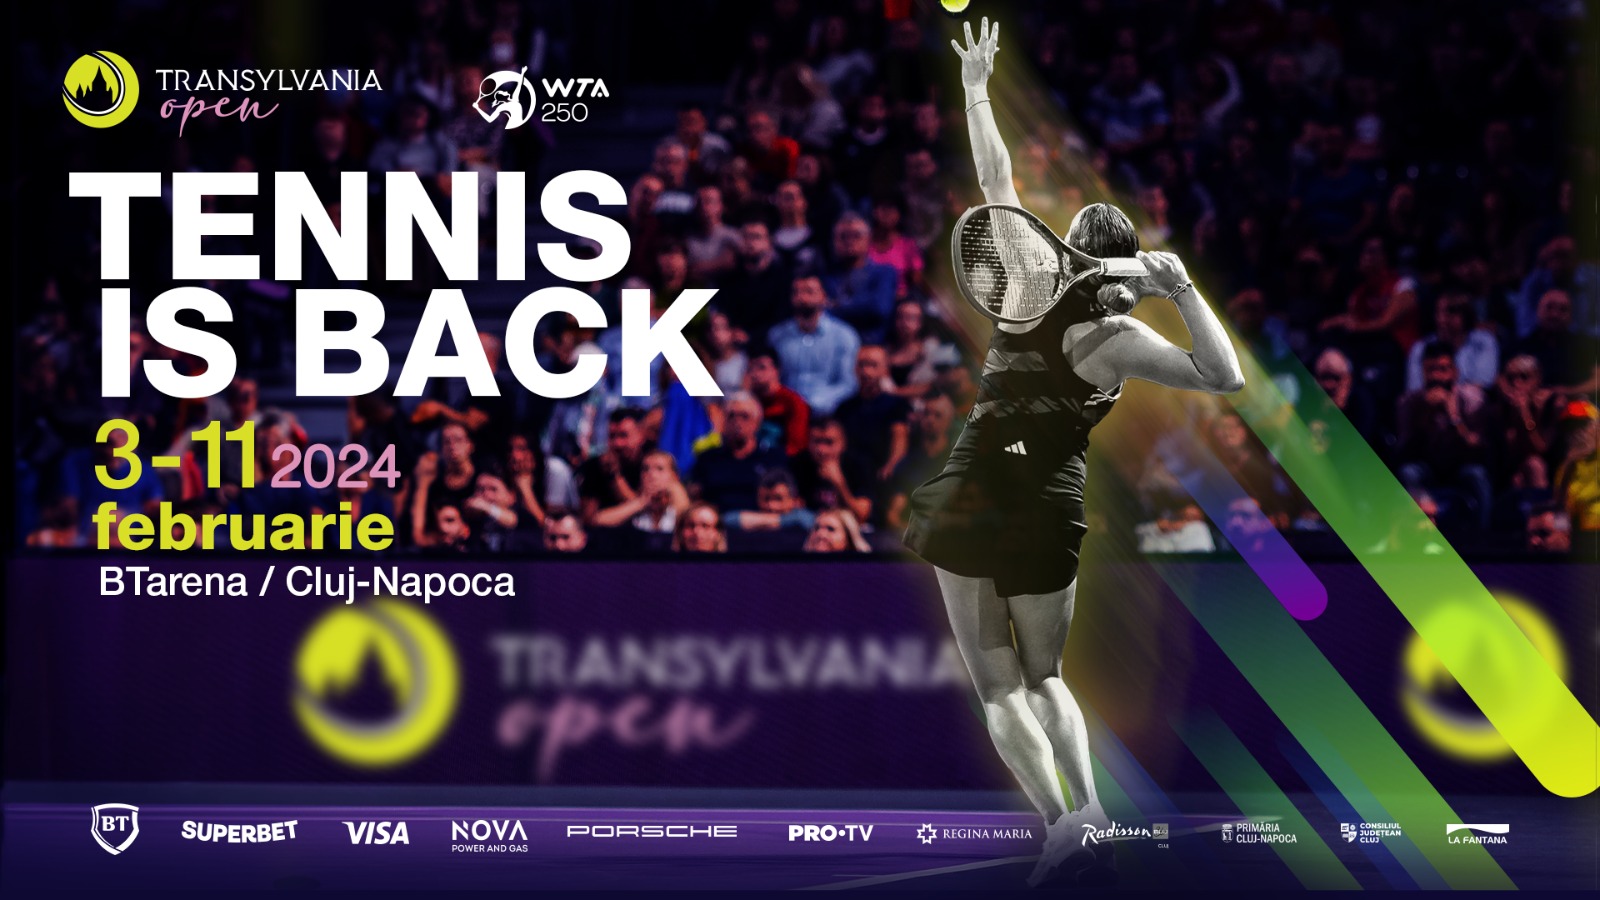 Transylvania Open WTA 250 se întoarce la Cluj-Napoca mult mai repede